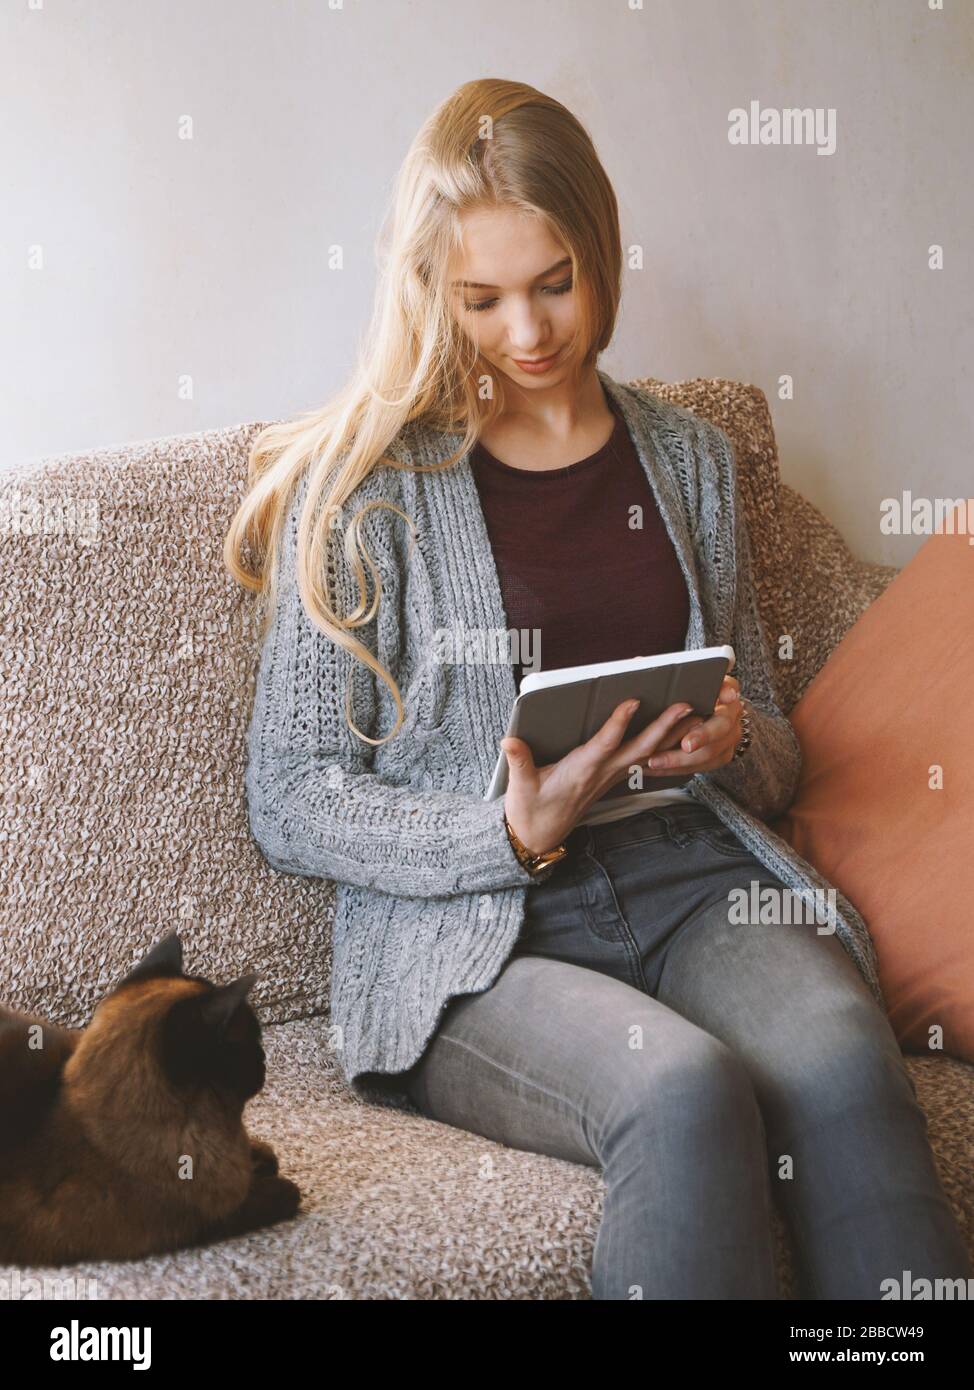 Bleiben Sie zu Hause Teenager-Mädchen Lesen Sie E-Book oder verwenden Sie einen Tablet-Computer, während Sie auf einem Sofa mit Katze sitzen - Online-Kommunikation während der Quarantäne Stockfoto